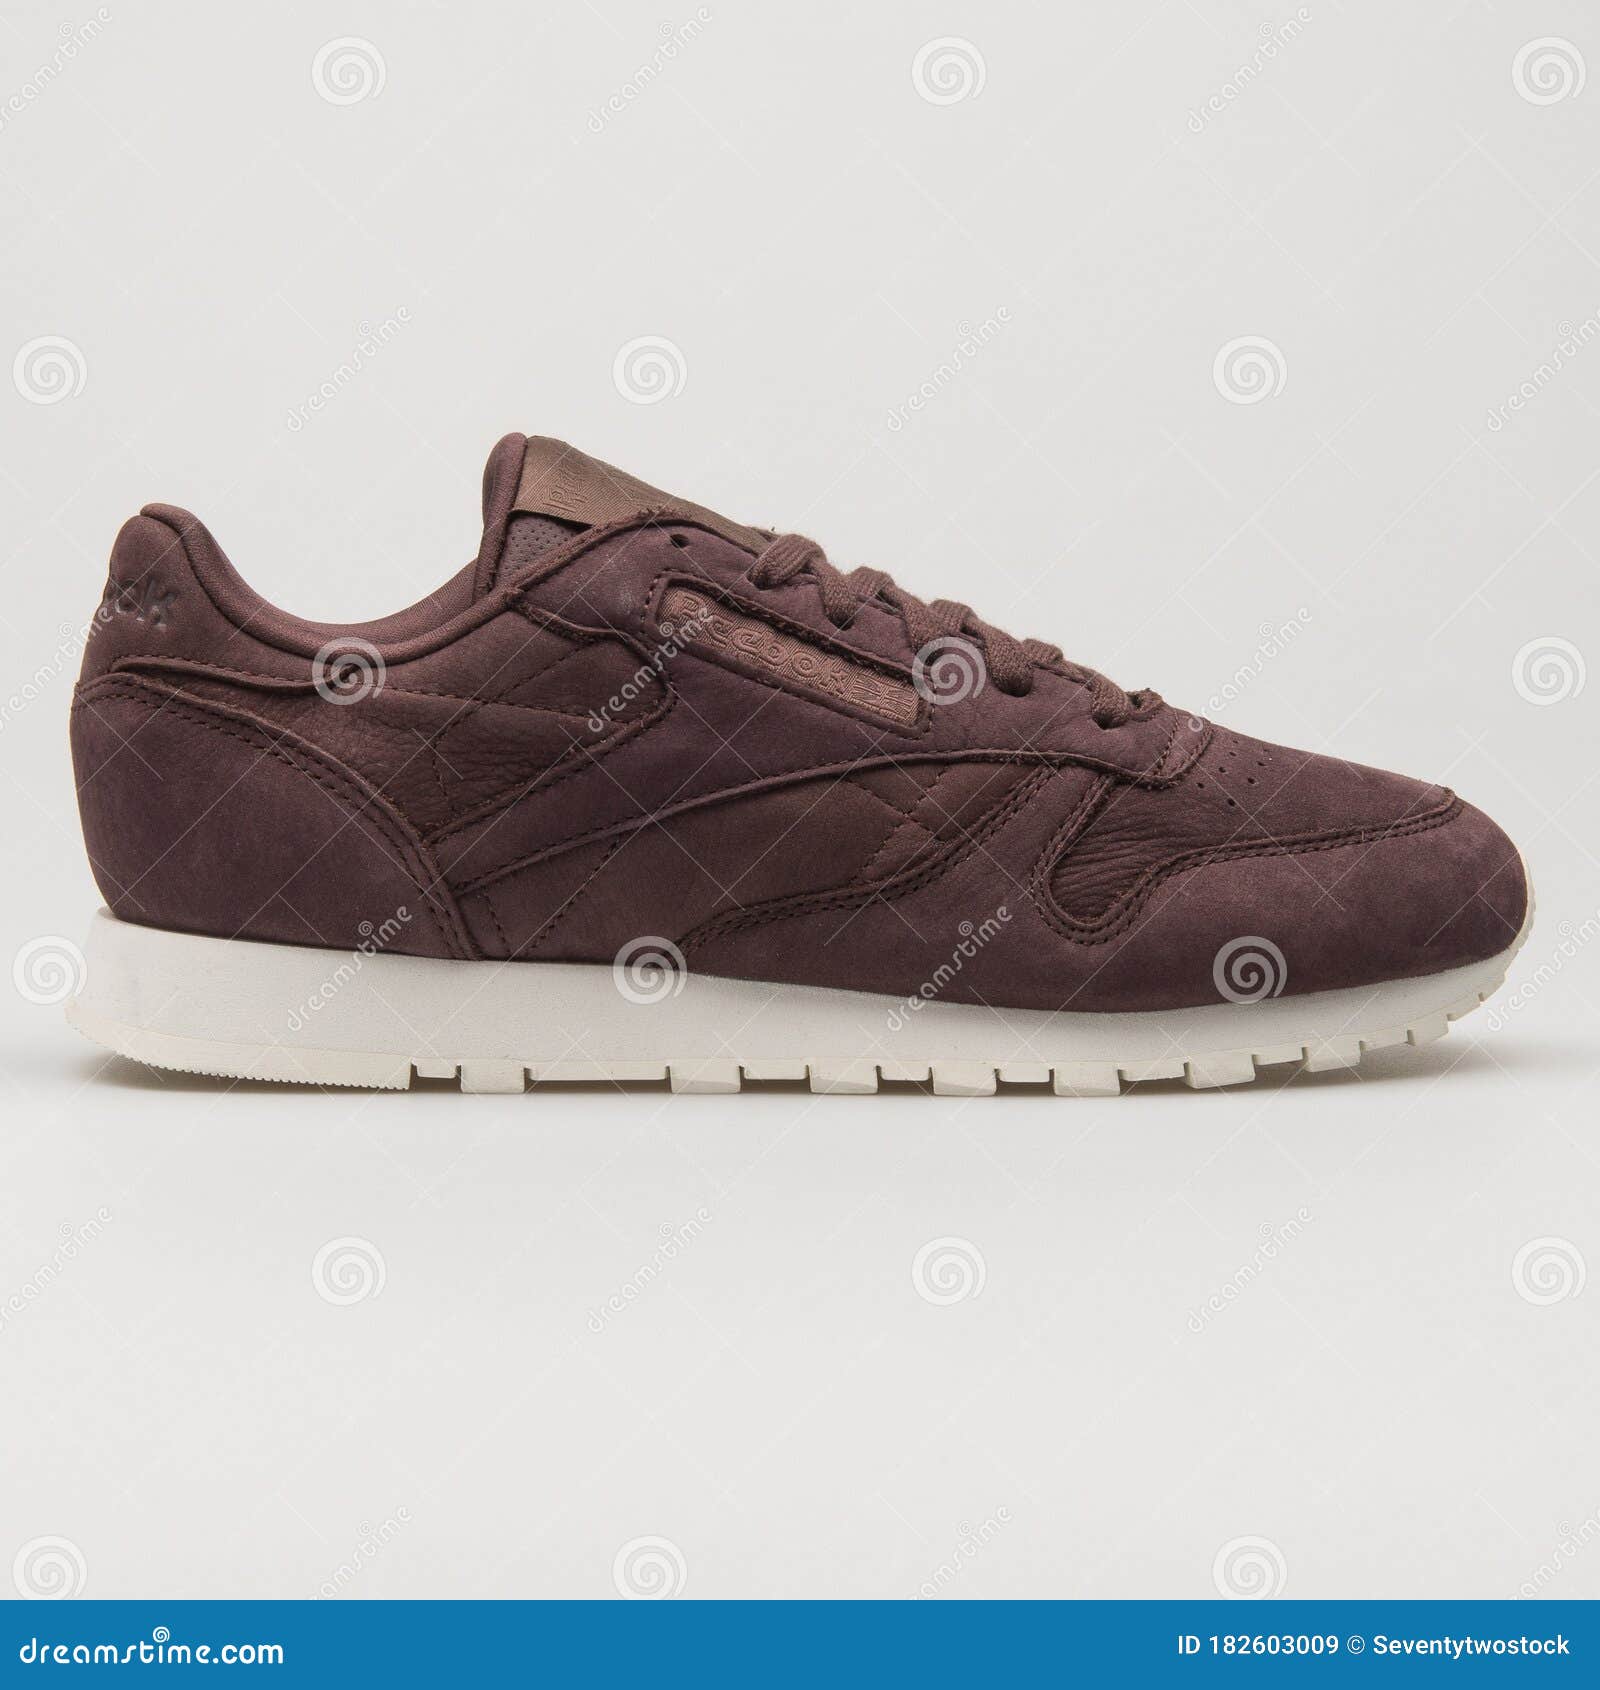 Reebok Oscuro Burgundy Sneaker Imagen de archivo editorial - Imagen de zapatillas, actividad: 182603009